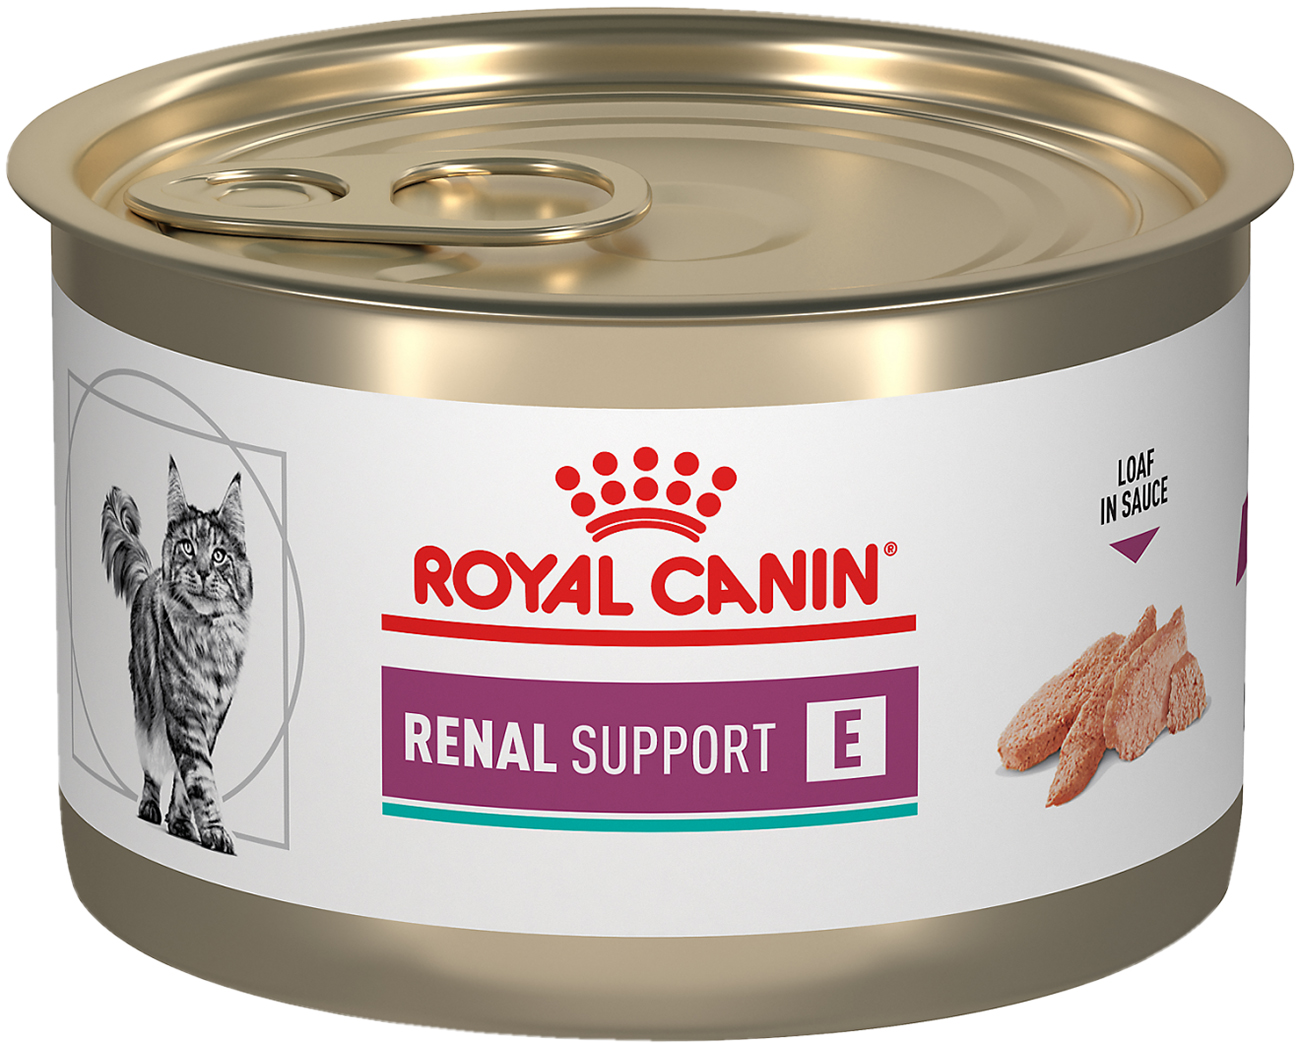 Alimento Húmedo en Lata para Gatos Royal Canin Renal Support E Alimento Húmedo en Lata para Gatos Royal Canin Renal Support E